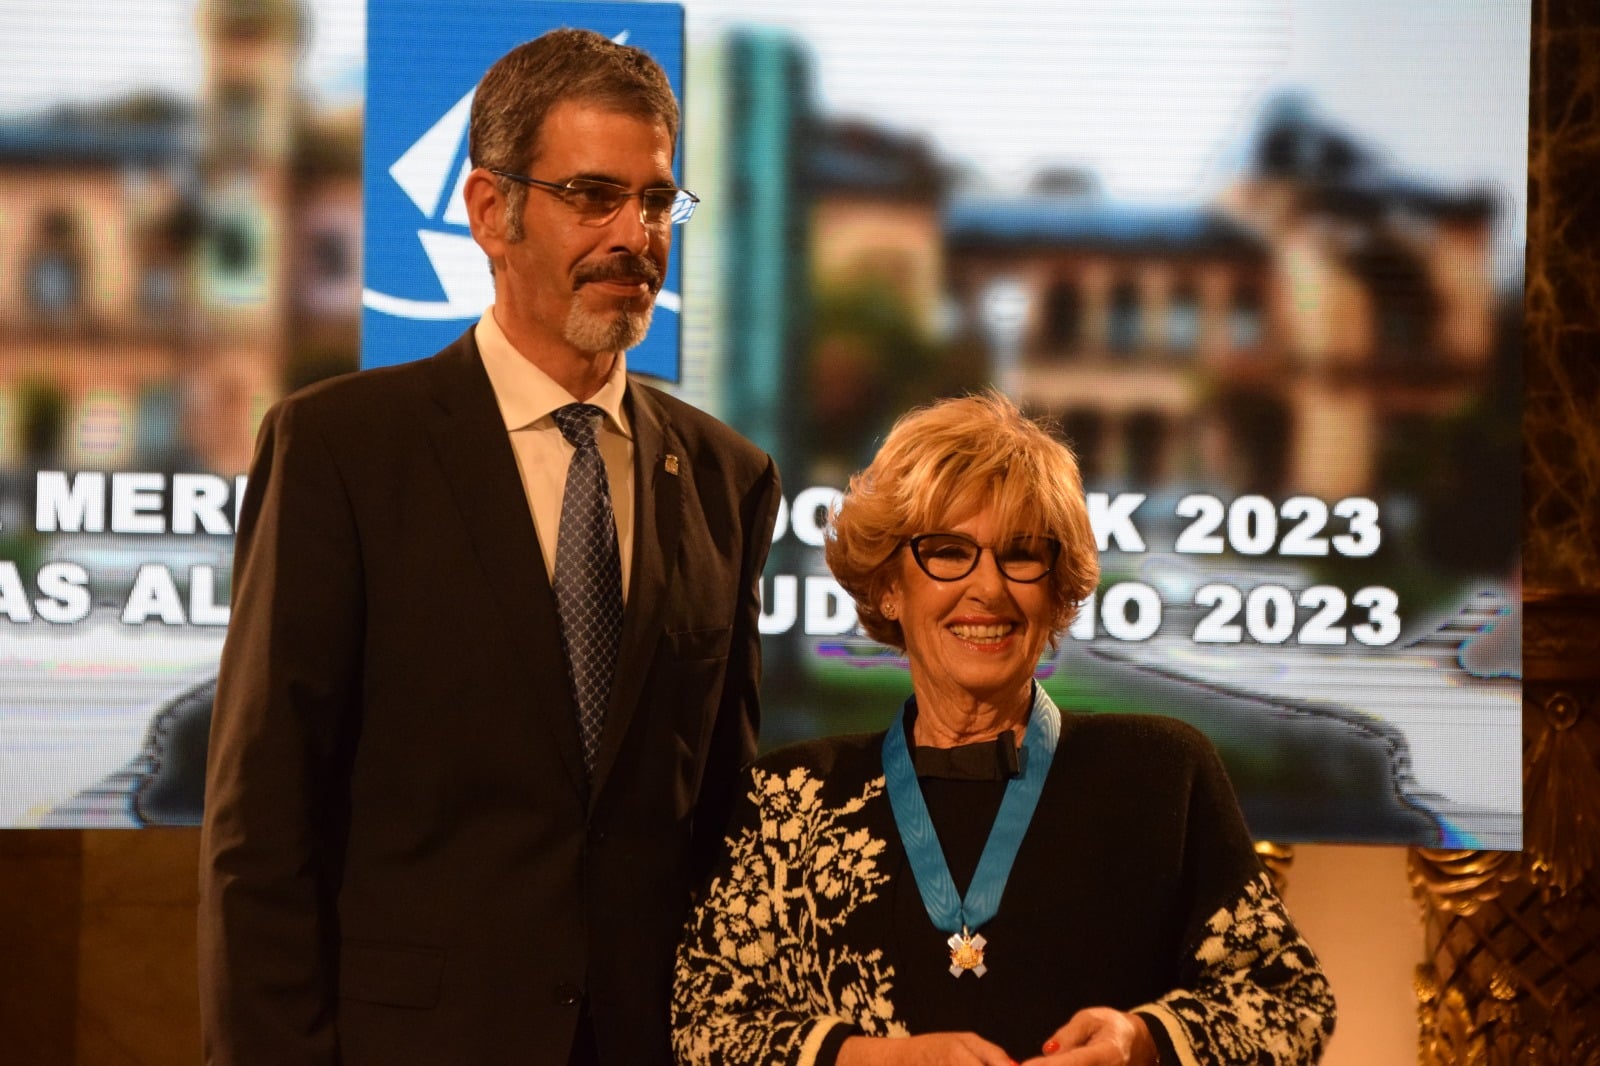 medallas5 - Donostia entrega sus Medallas al Mérito Ciudadano